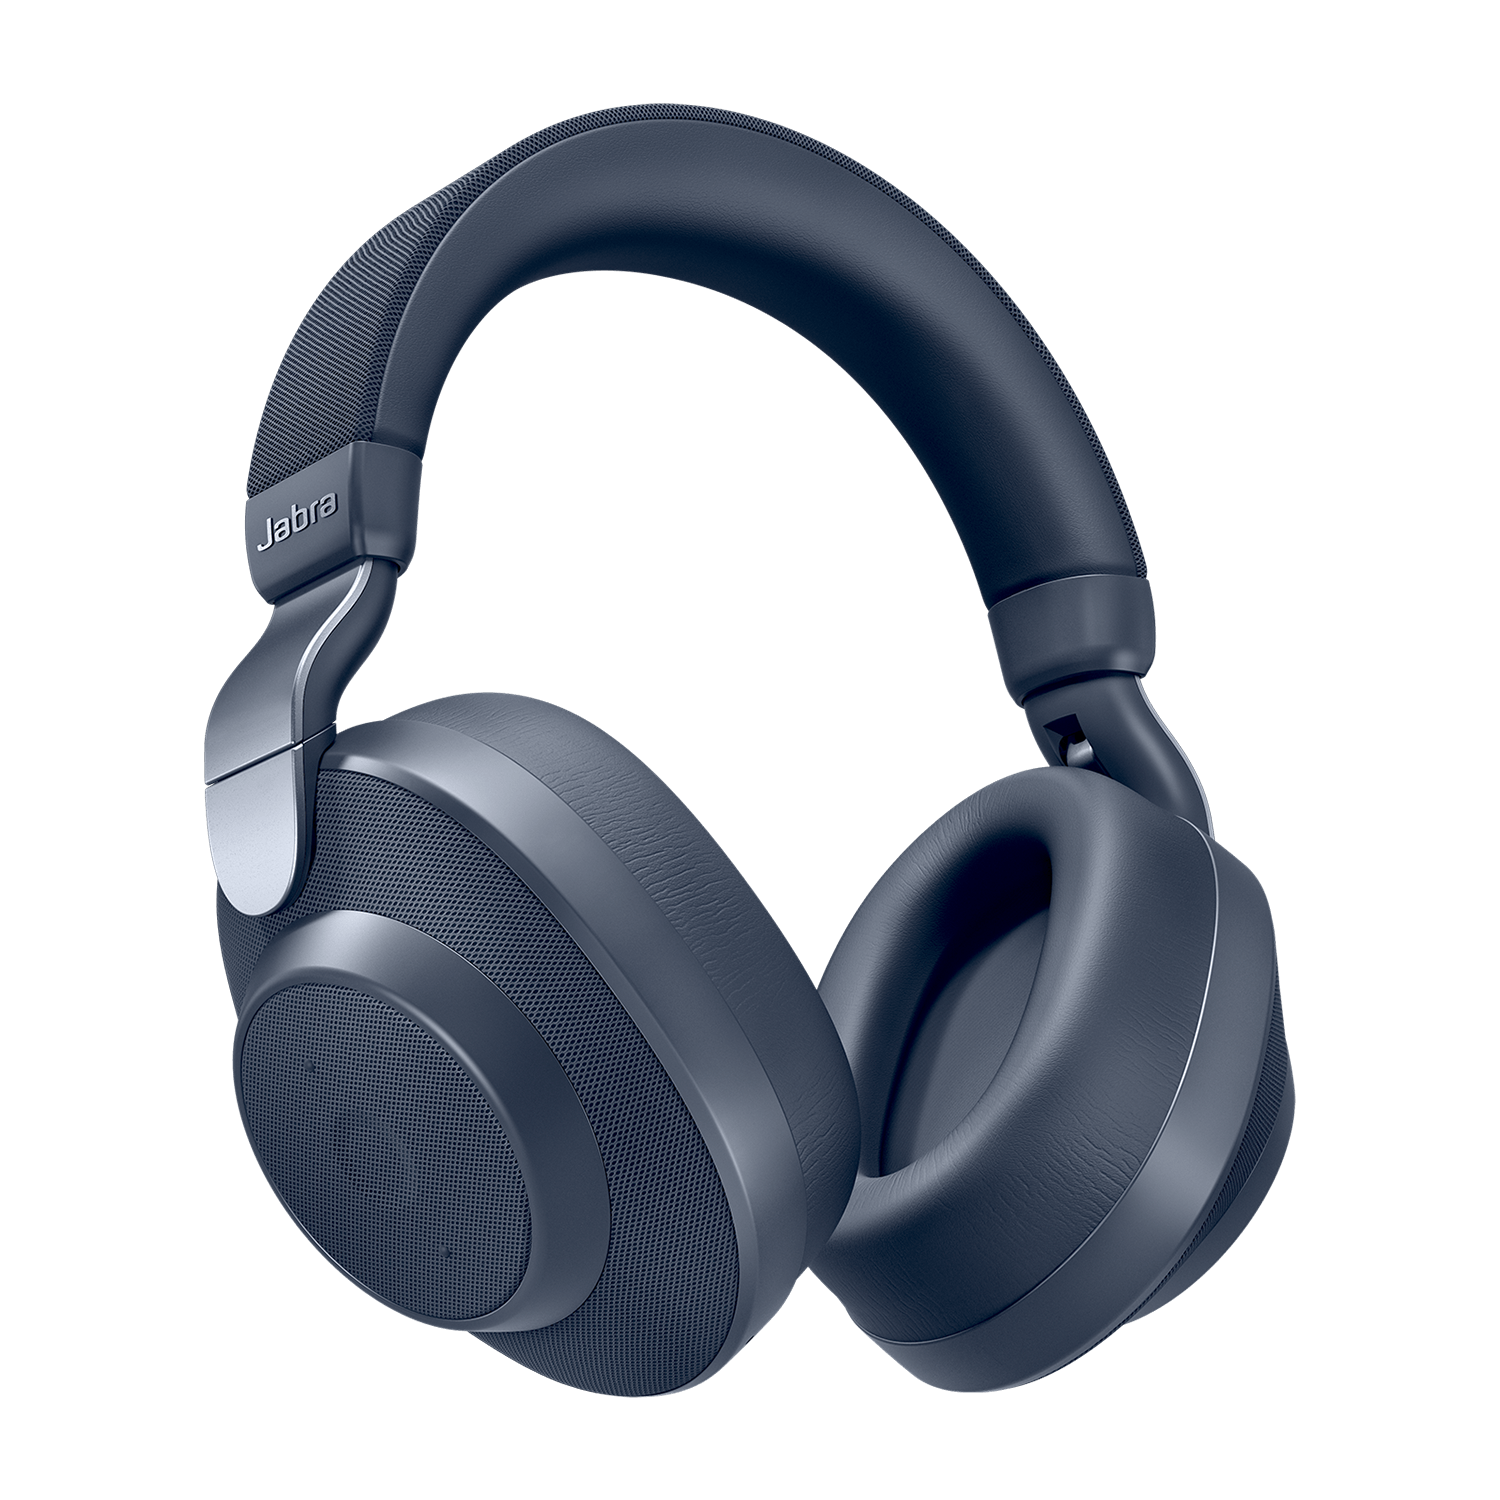 Richtlijnen Zaailing Vast en zeker Wireless noise cancelling headphones with SmartSound | Jabra Elite 85h